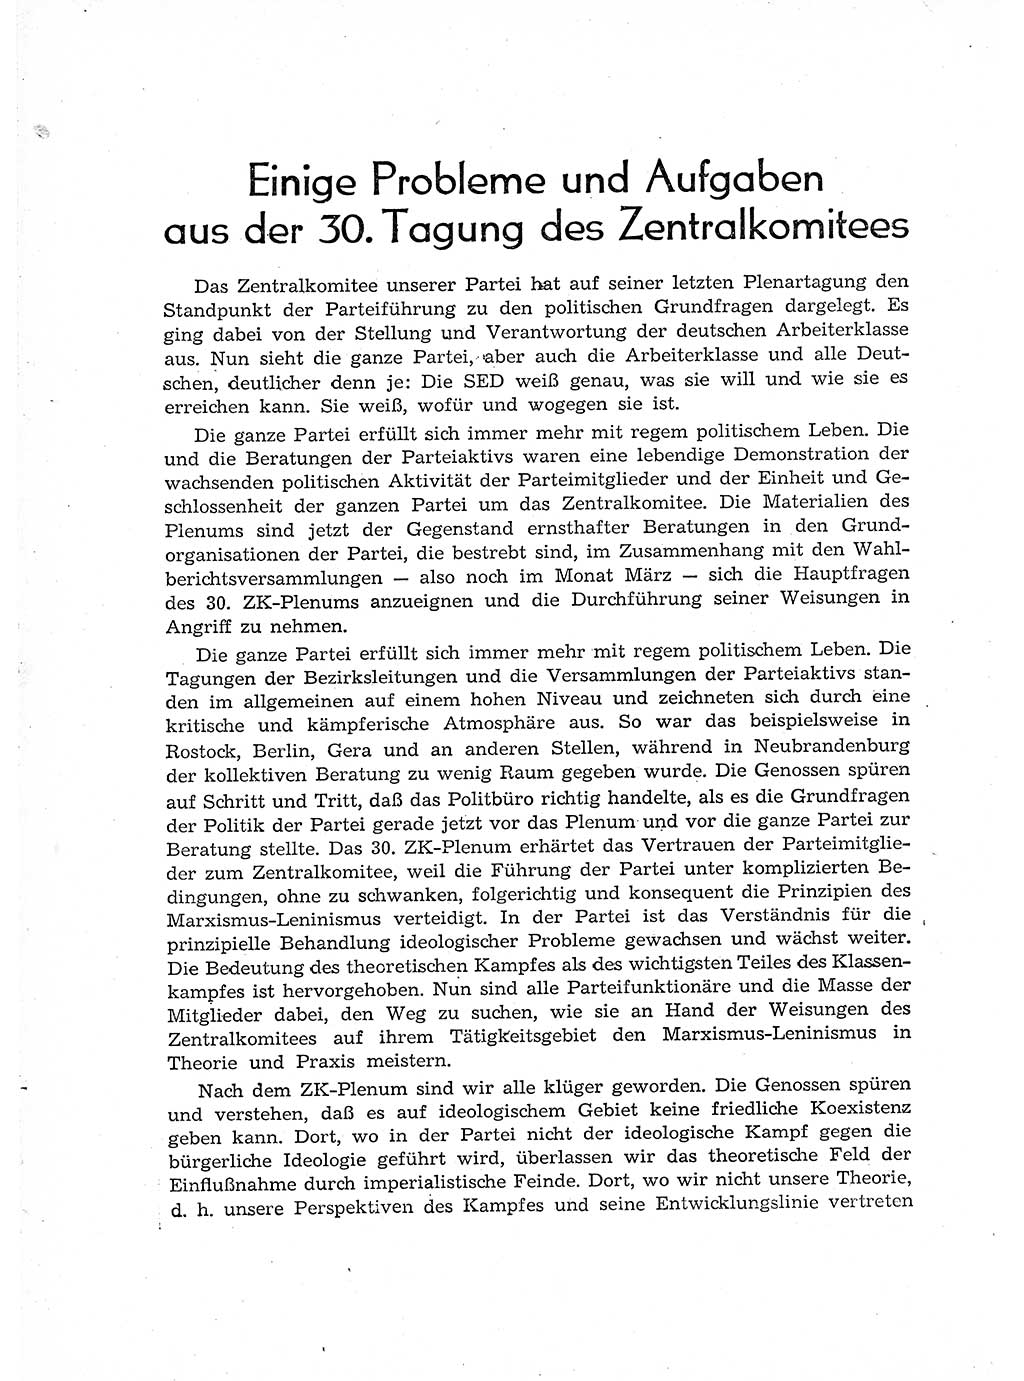 Neuer Weg (NW), Organ des Zentralkomitees (ZK) der SED (Sozialistische Einheitspartei Deutschlands) für Fragen des Parteiaufbaus und des Parteilebens, 12. Jahrgang [Deutsche Demokratische Republik (DDR)] 1957, Seite 258 (NW ZK SED DDR 1957, S. 258)